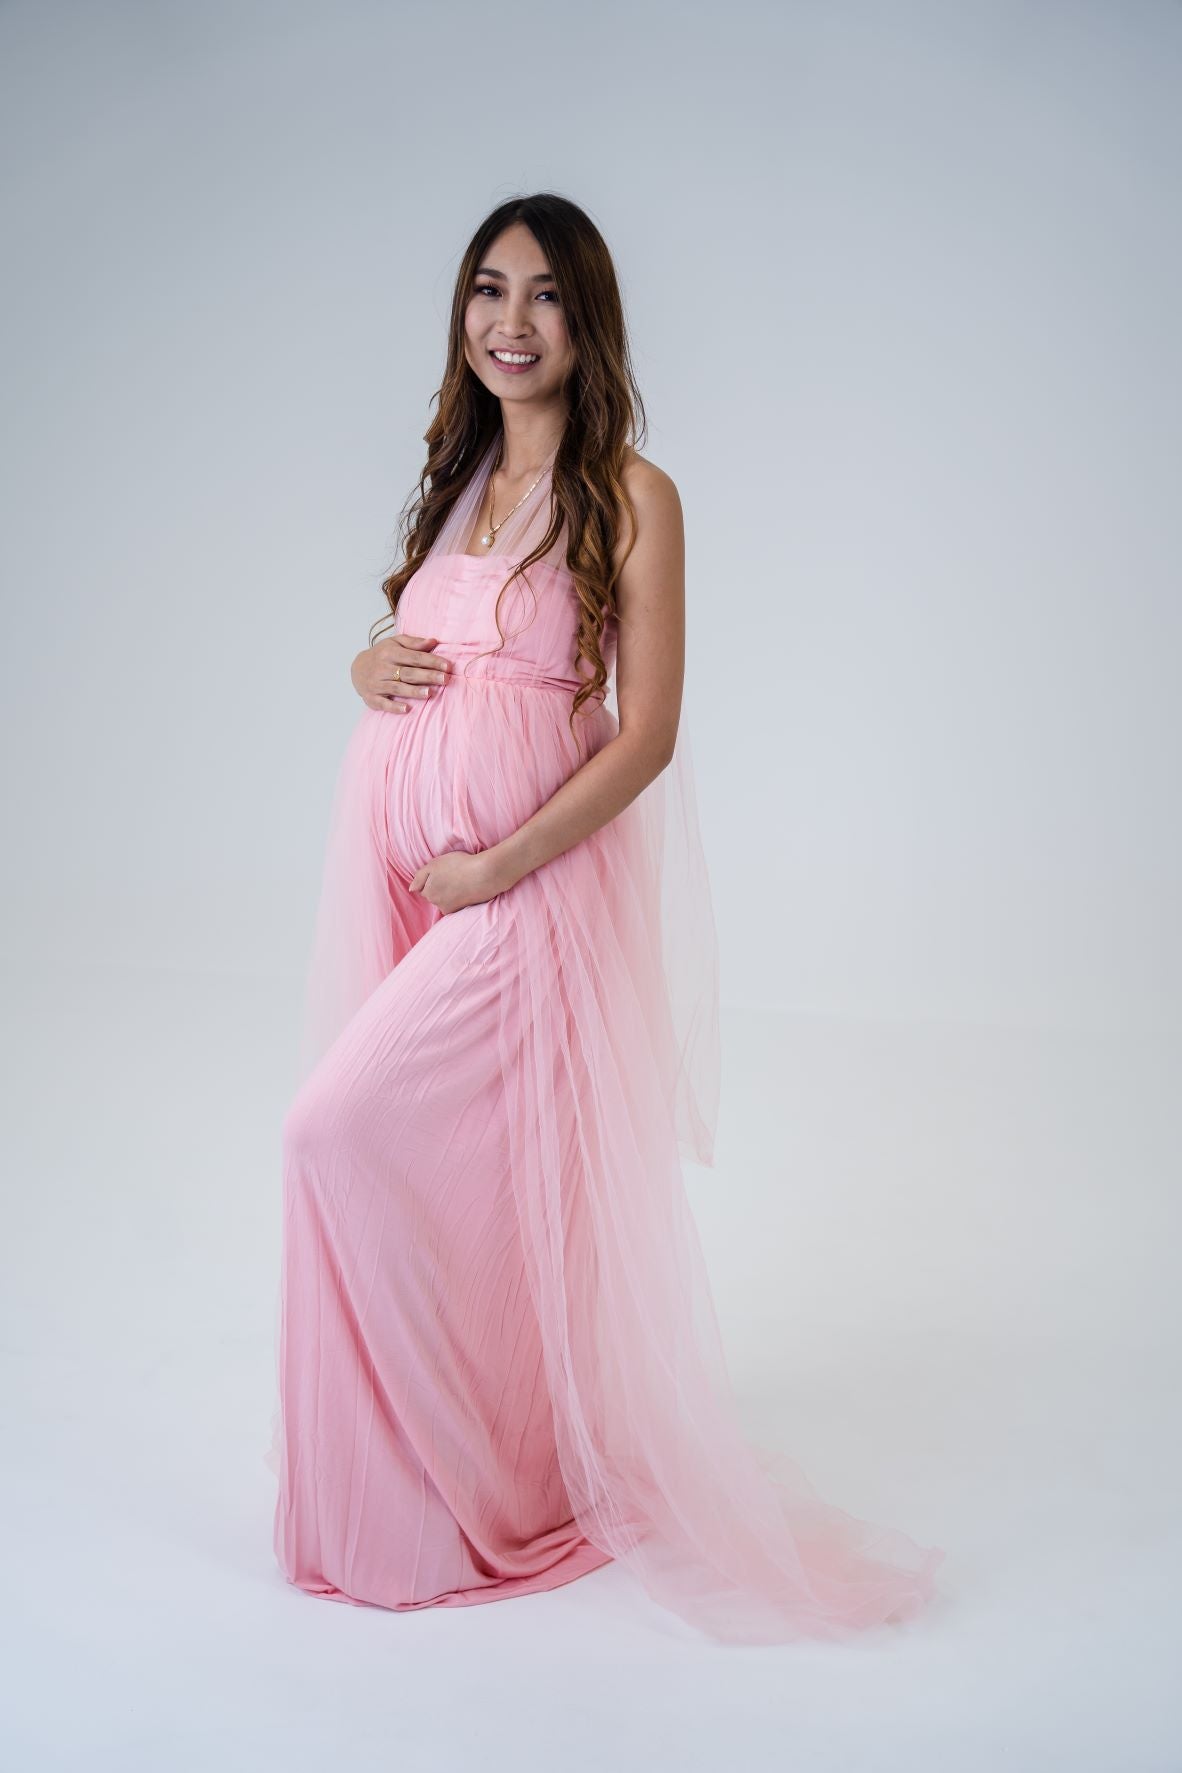 Baby shower dress - maternity formal dresses australia